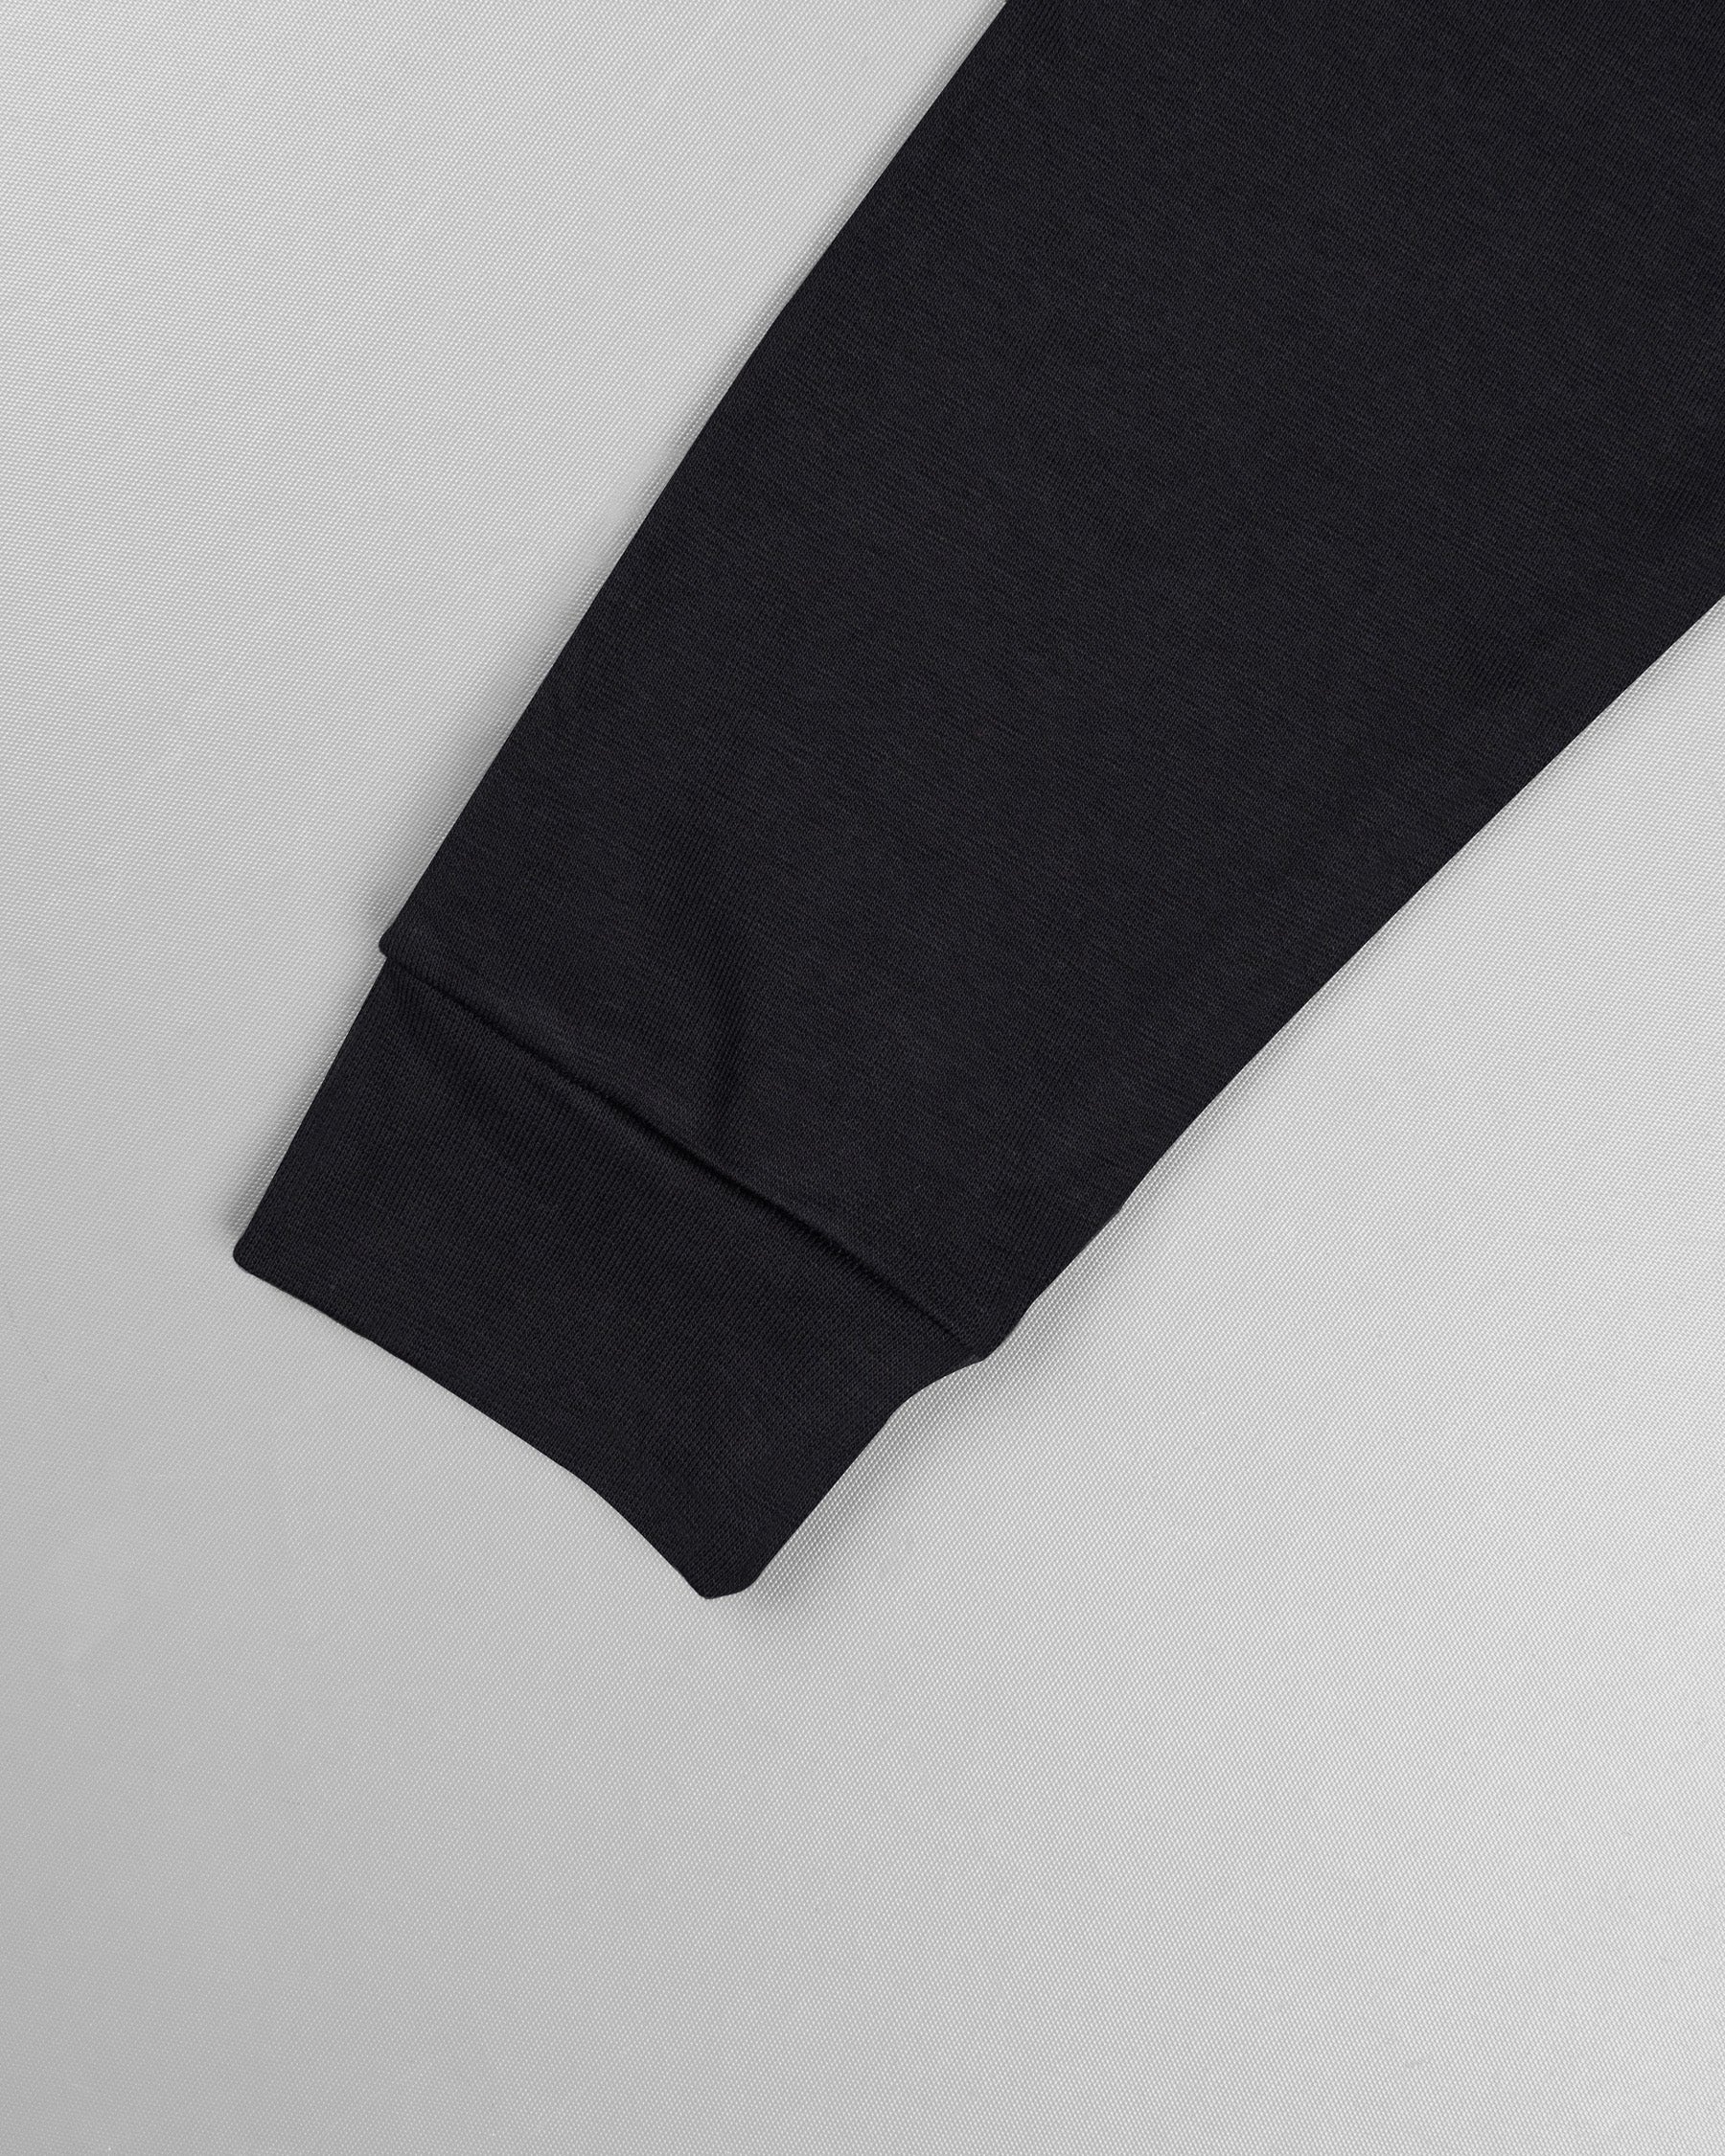 Jade Black and Wheatfield Full Sleeve Premium Cotton Jersey Sweatshirt TS504-S, TS504-M, TS504-L, TS504-XL, TS504-XXL